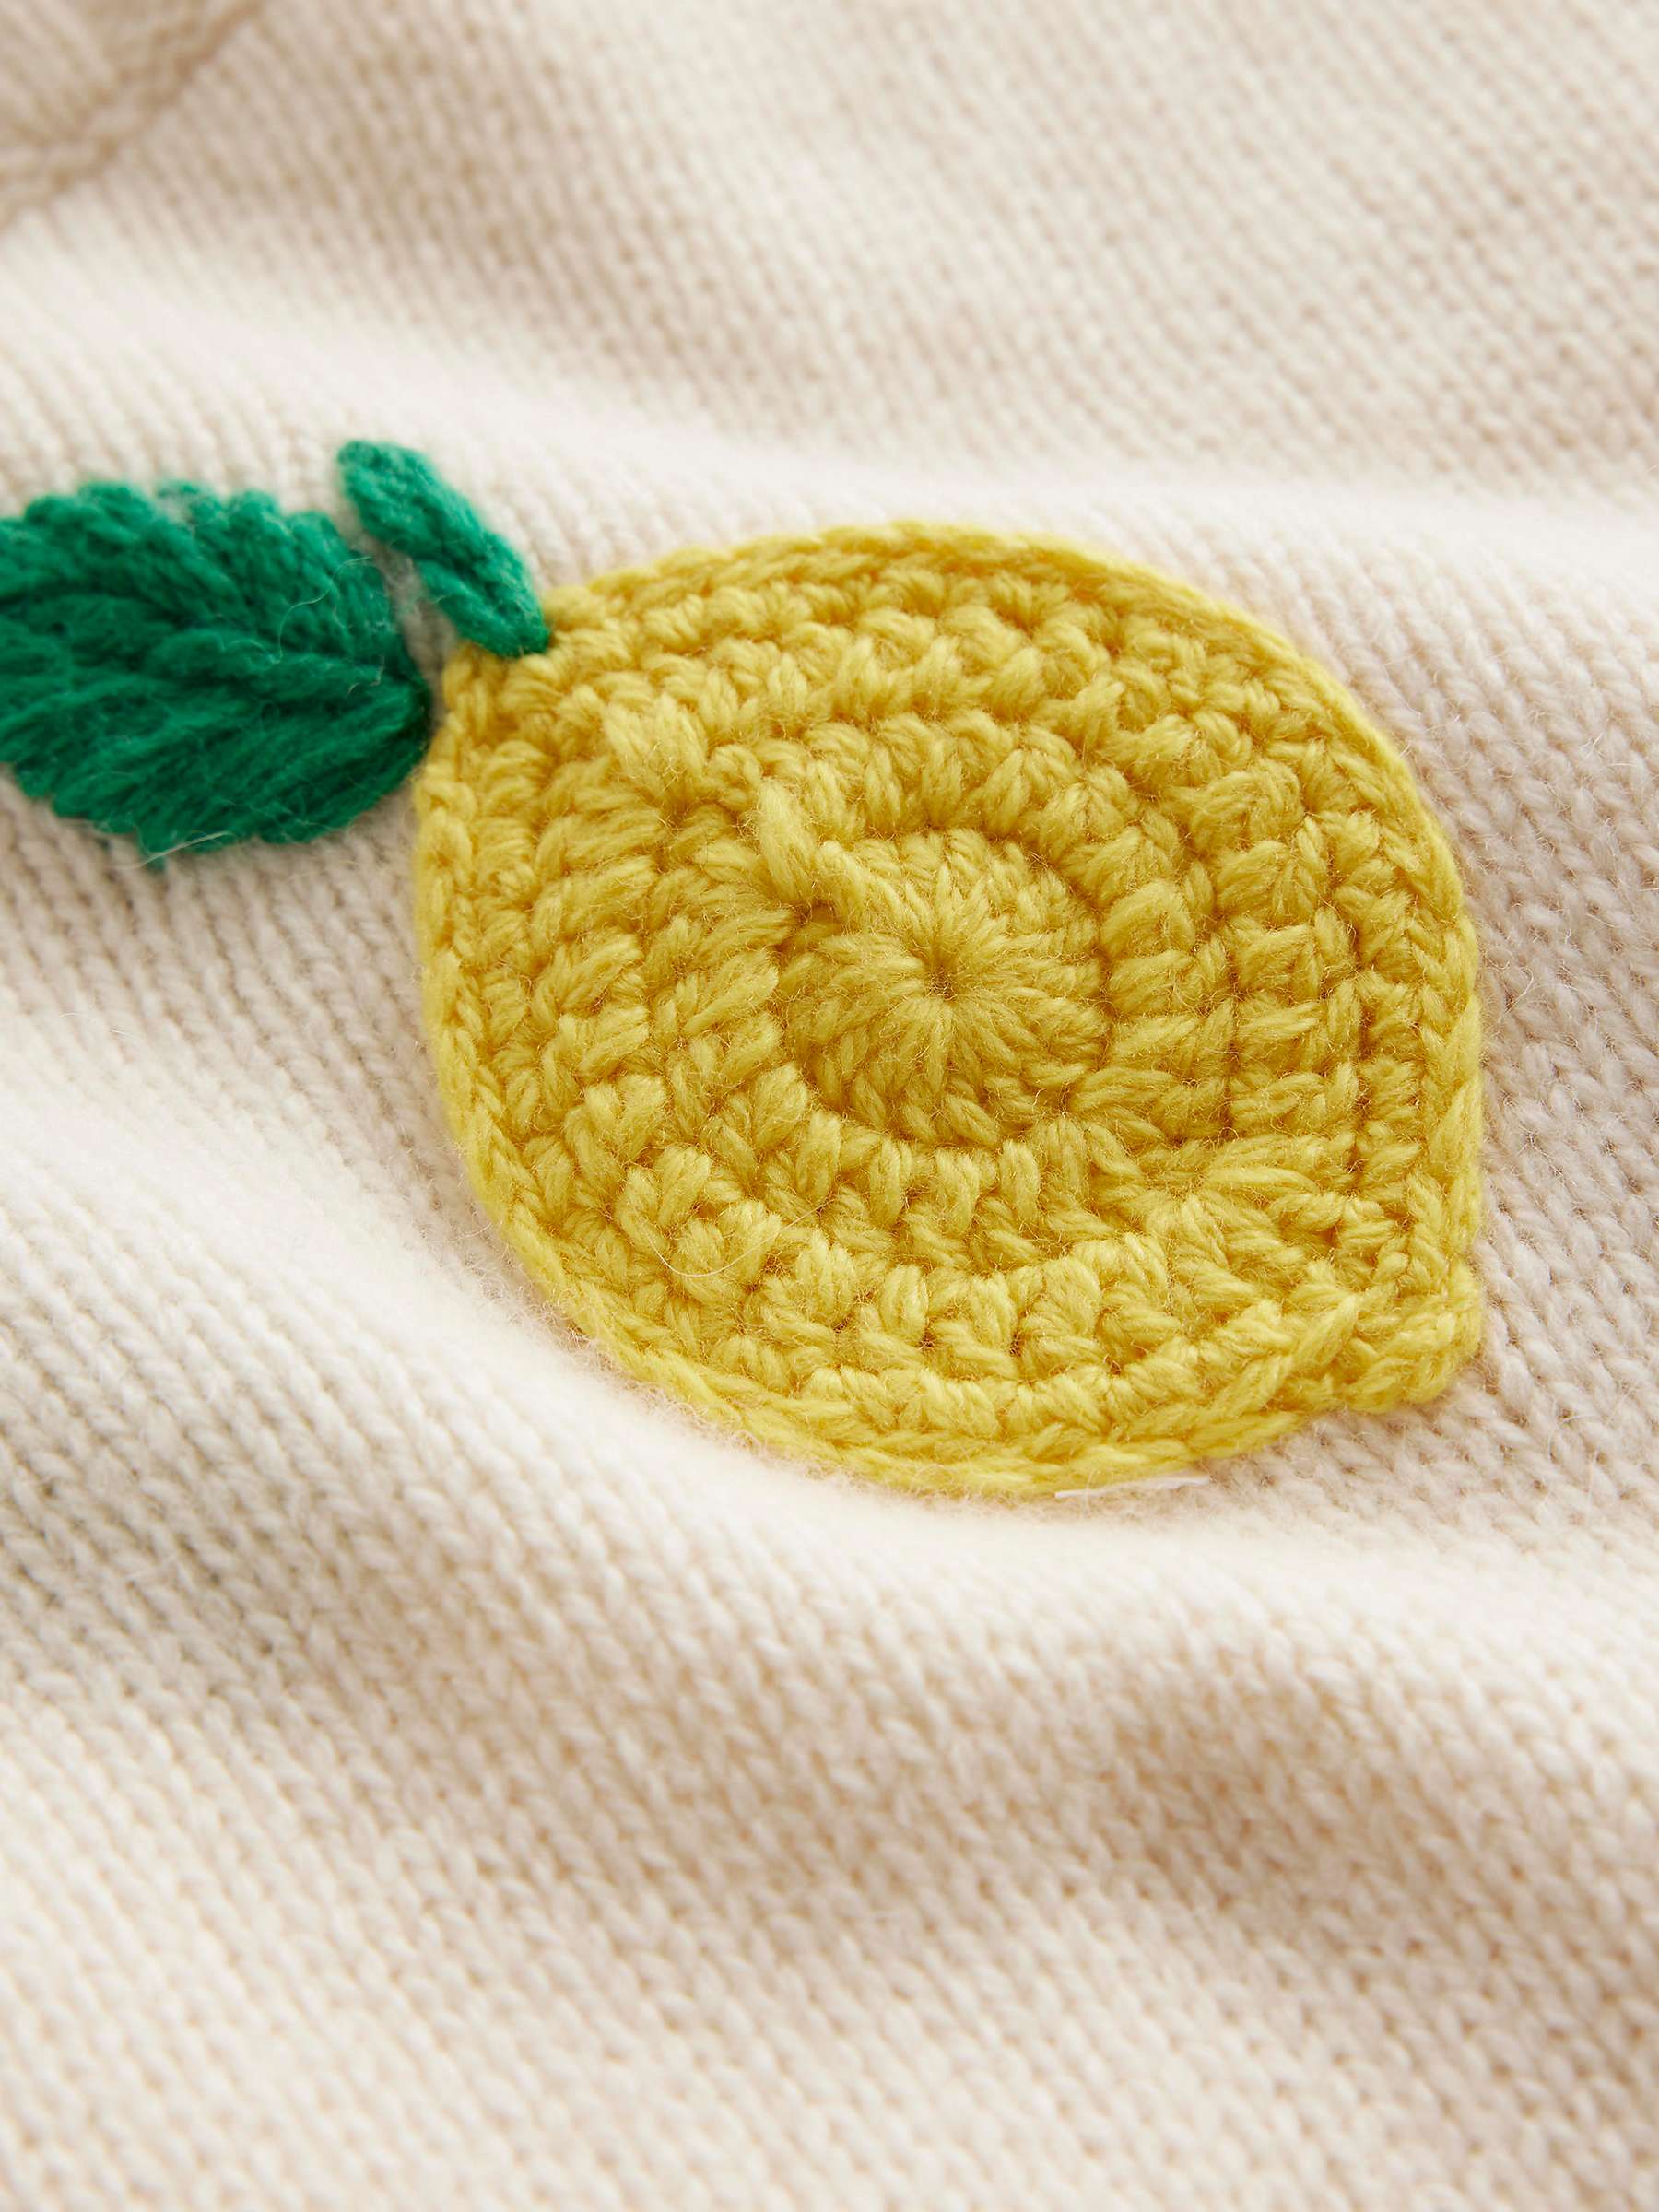 Buy Boden Wool Blend Hand Embroidered Lemon Jumper, Warm Ivory Lemons Online at johnlewis.com